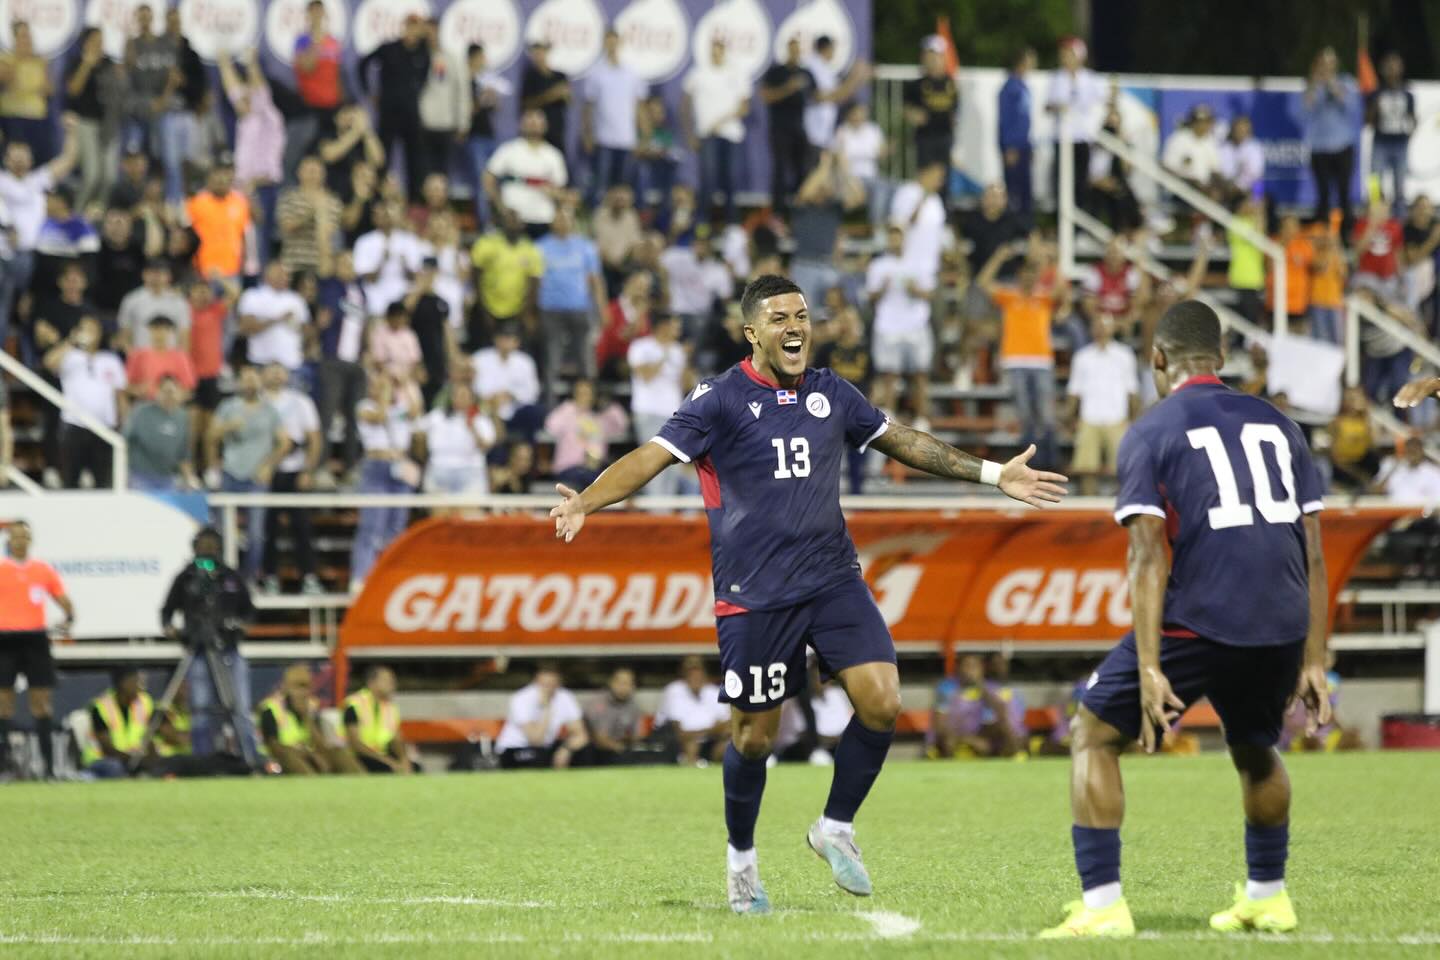 La selección de fútbol de República Dominicana gana y encanta